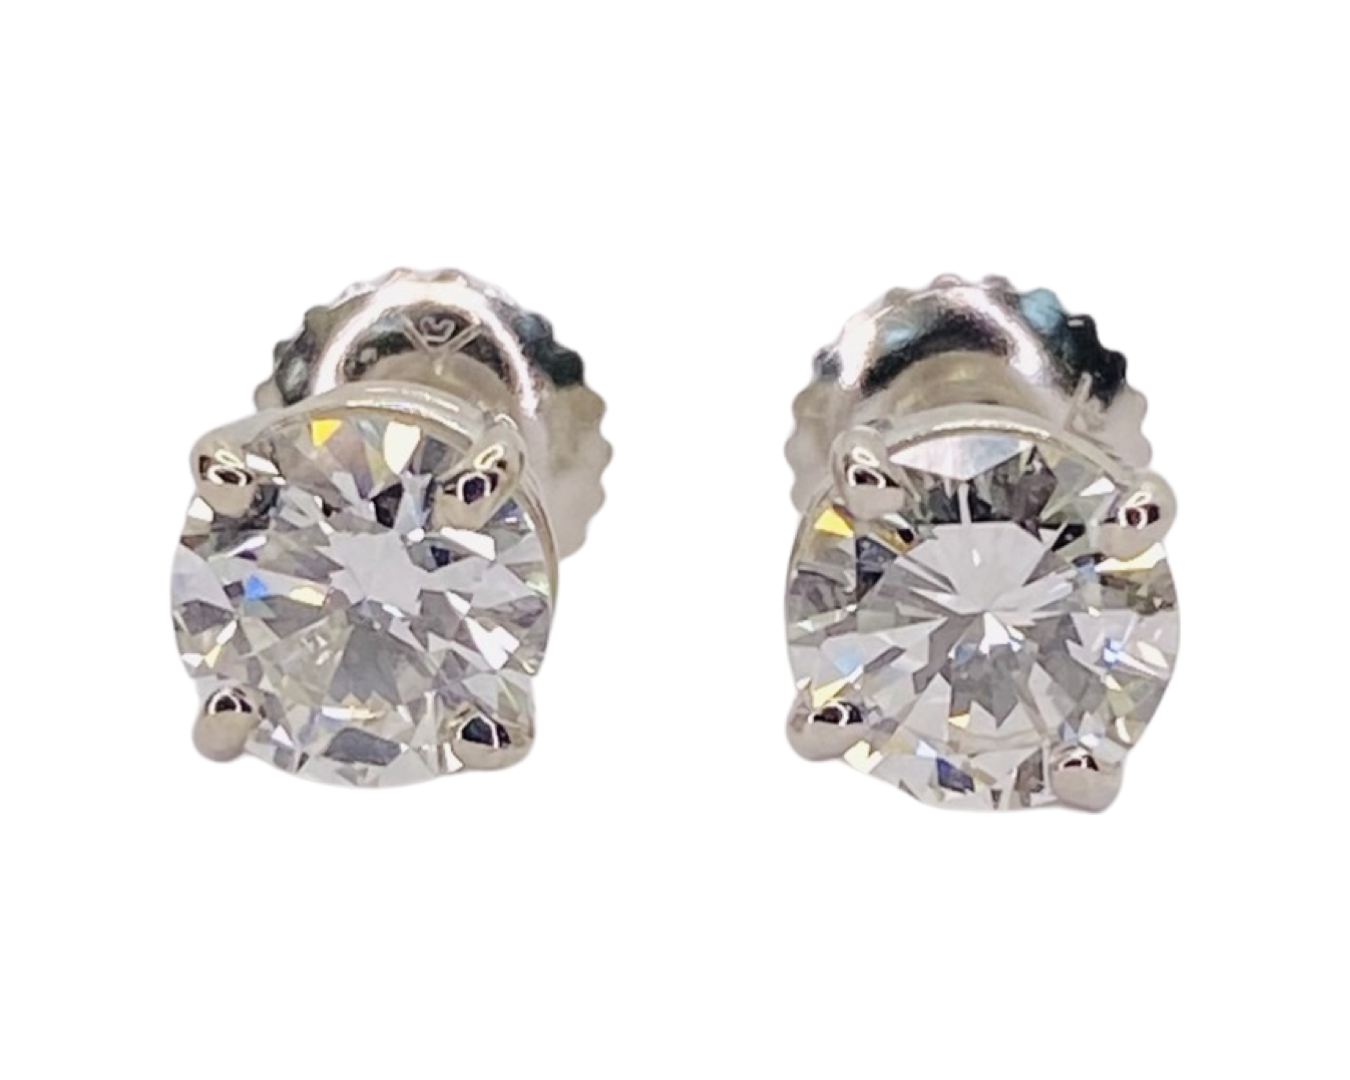 18K White Gold Diamond Stud Earrings